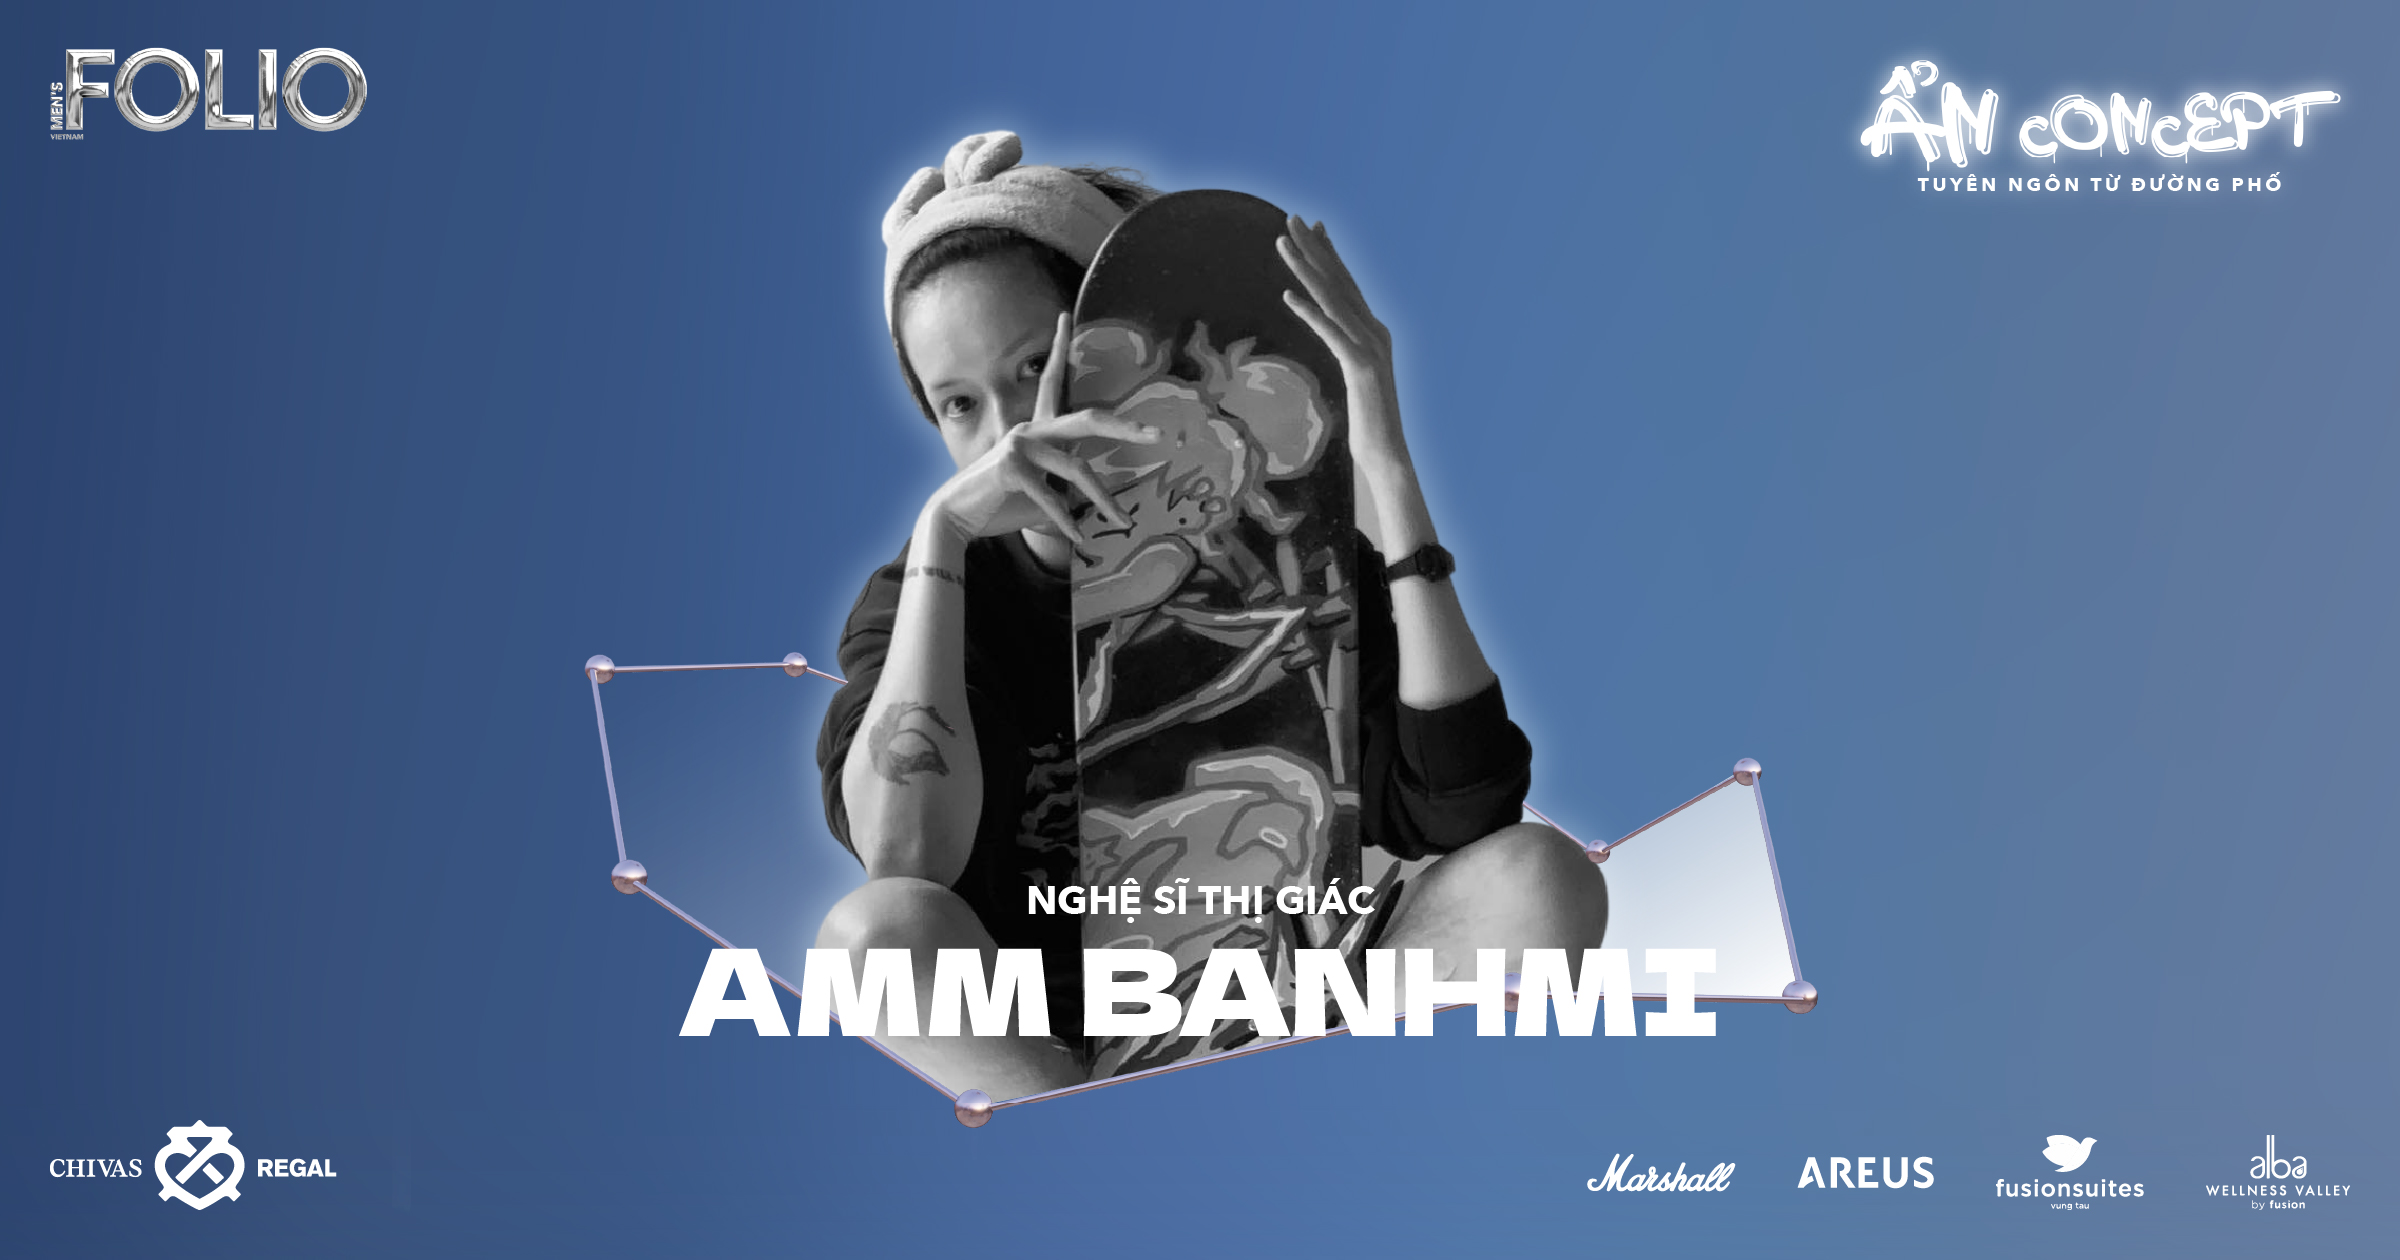 Amm Banhmi: “Tôi muốn thỏa hiệp với những tiêu cực, để sống tích cực hơn”